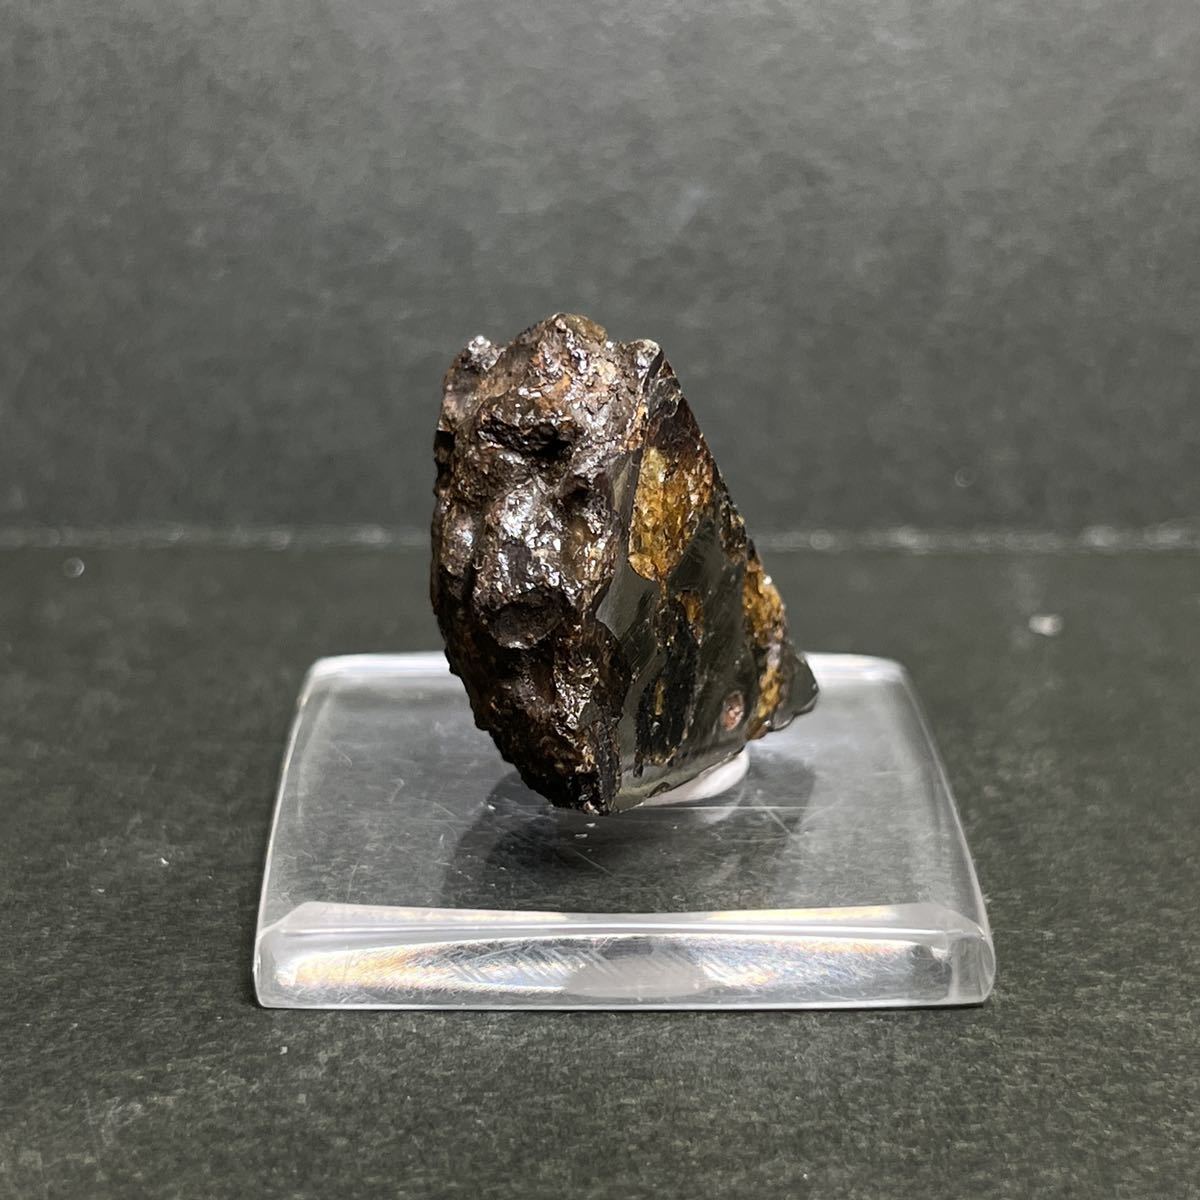 Sericho セリコ隕石 パラサイト 石鉄隕石 egecbenin.com